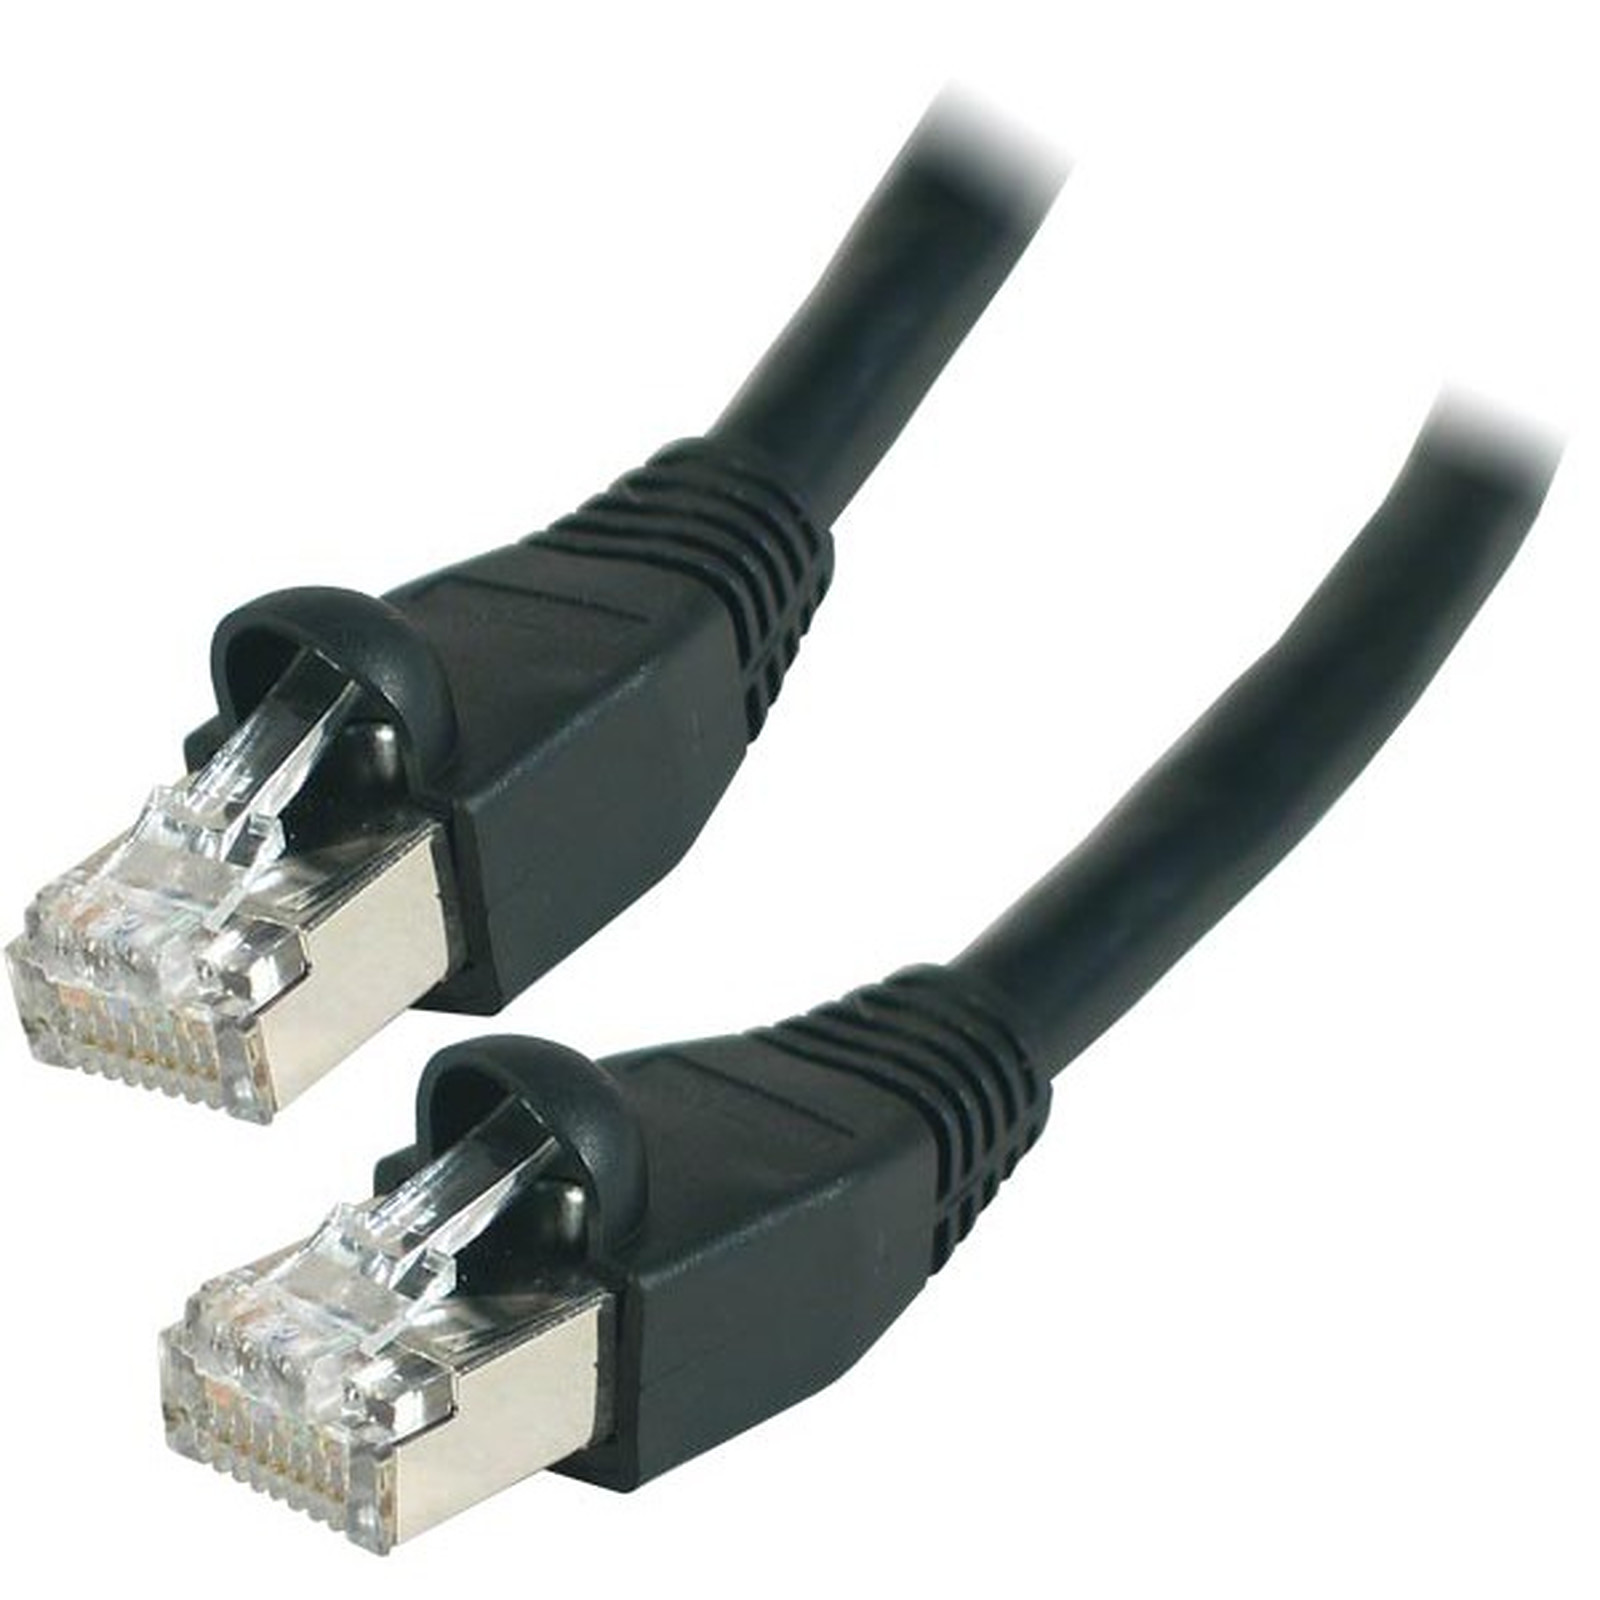 Cable RJ45 categorie 6 S/FTP 2 m (Noir) - Cable RJ45 Generique